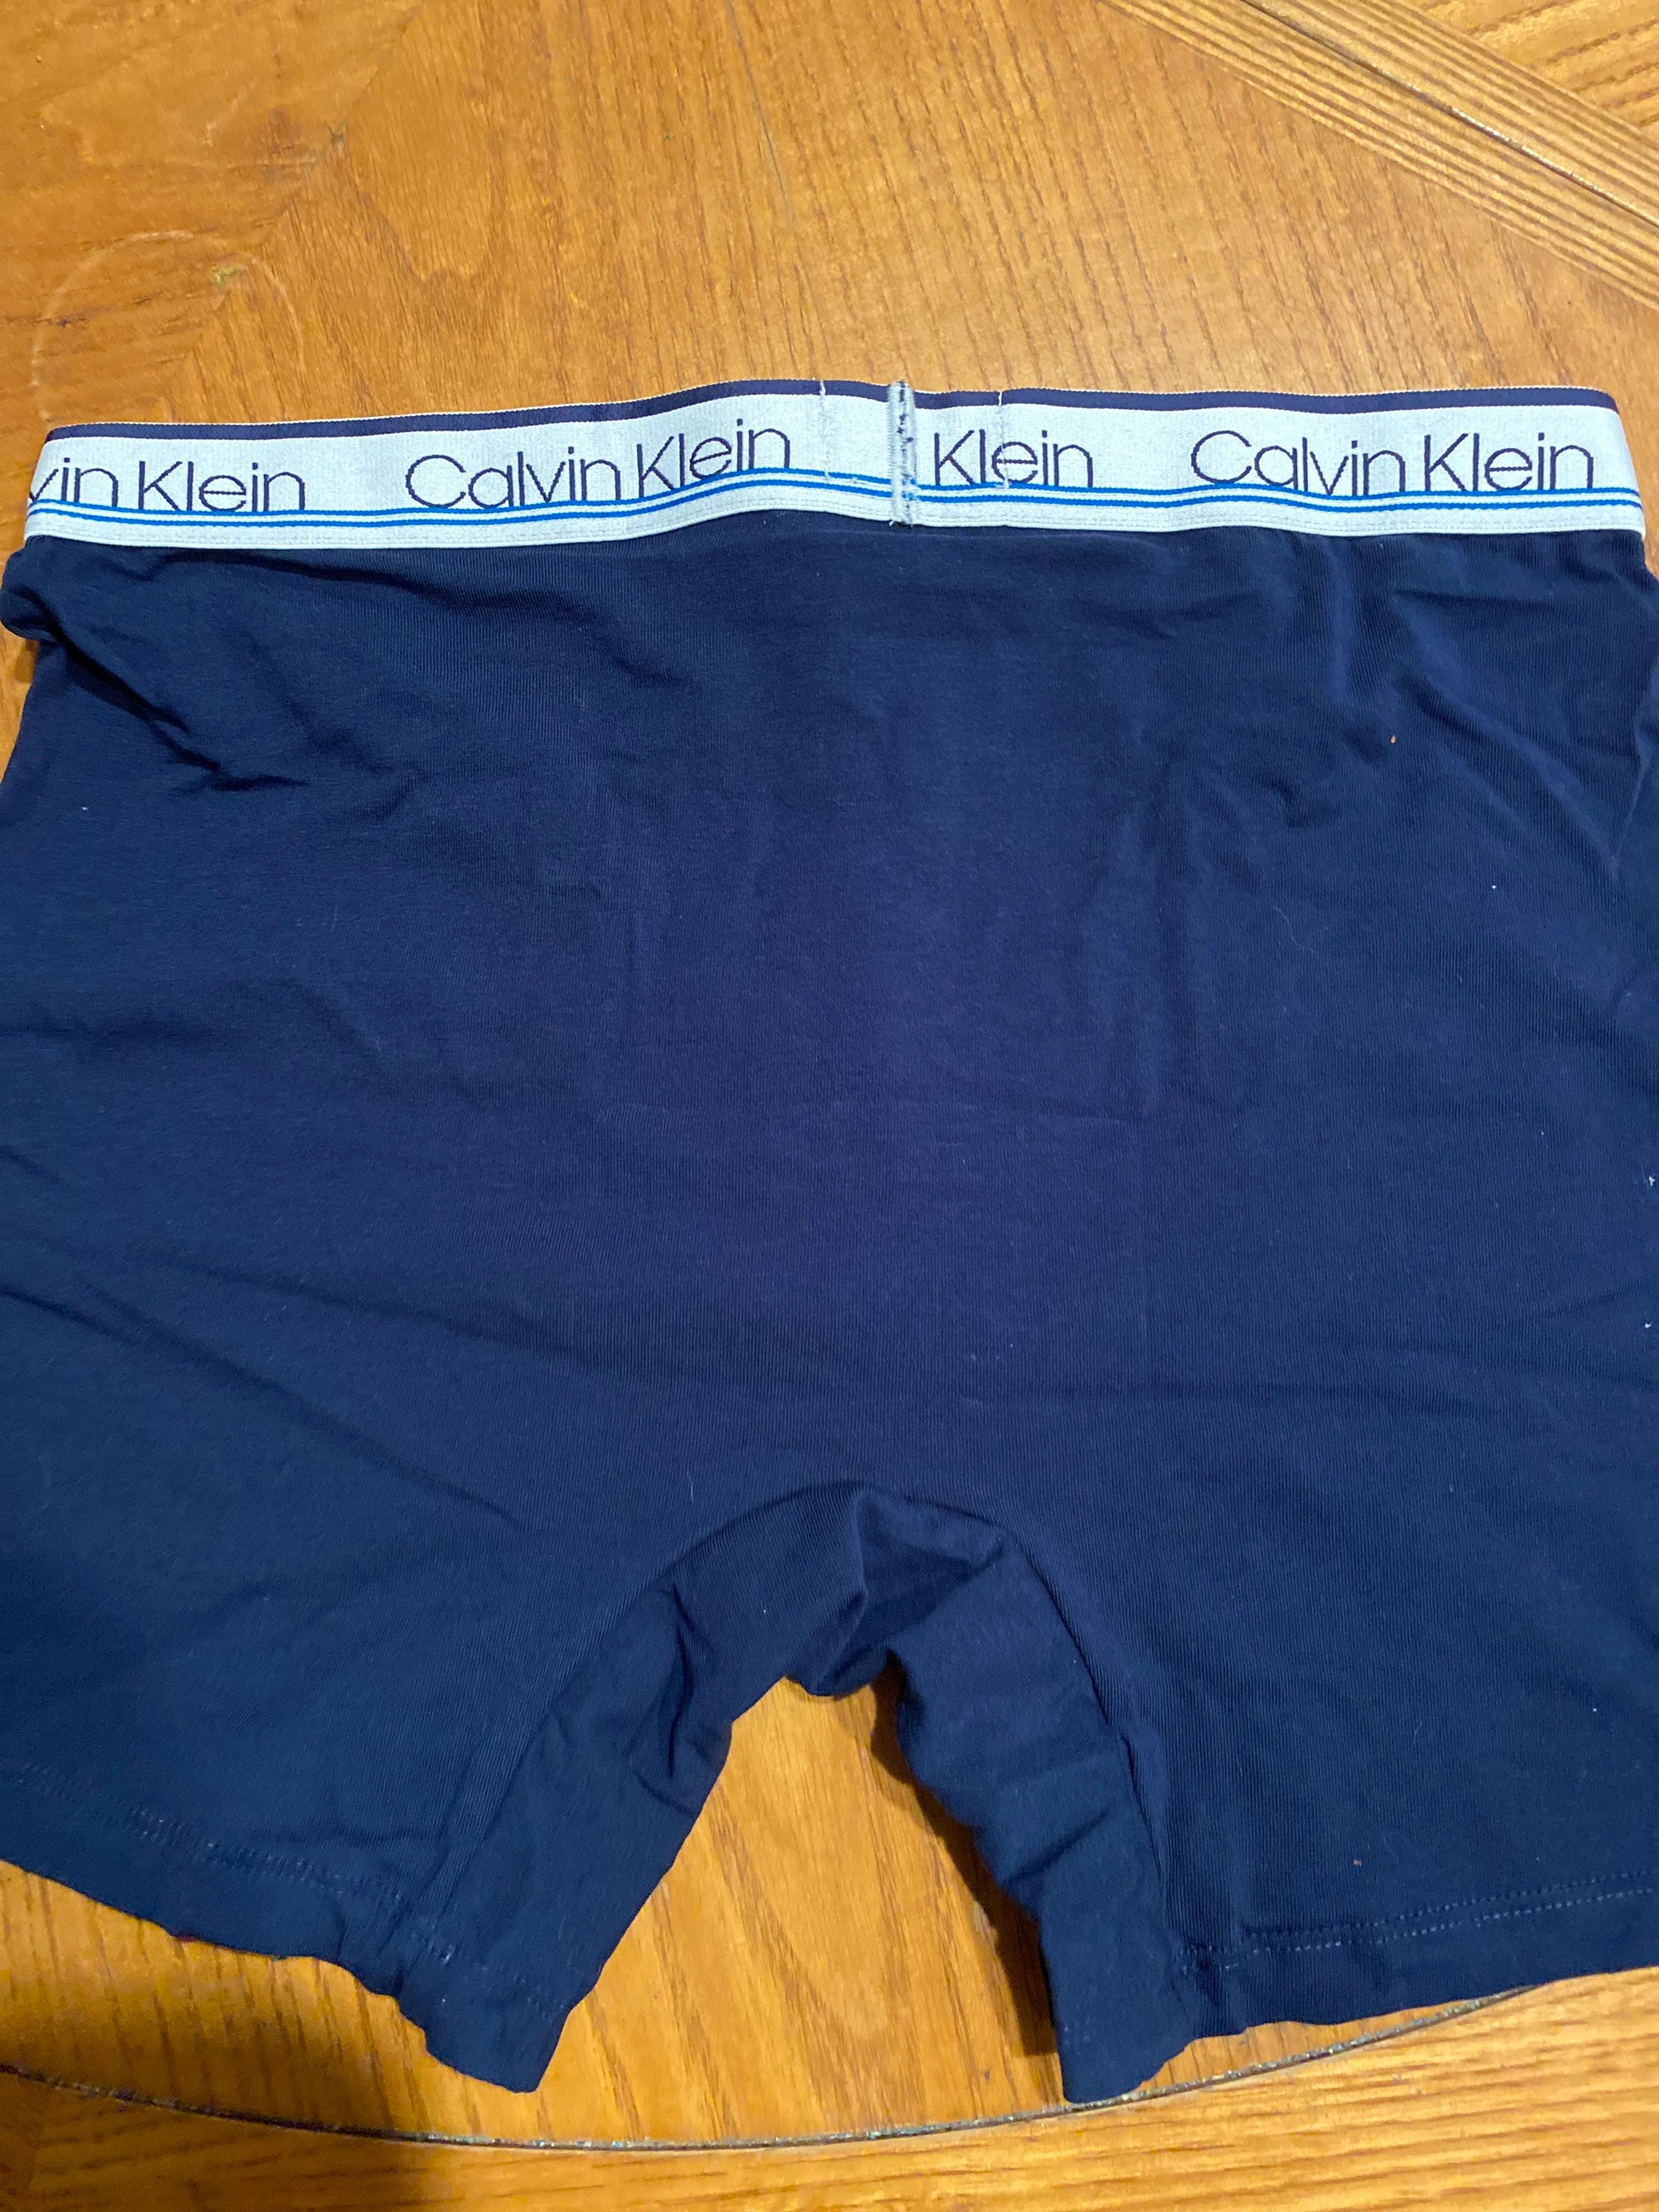 CALVIN KLEIN blue cotton stretch boxer brief | Etsy